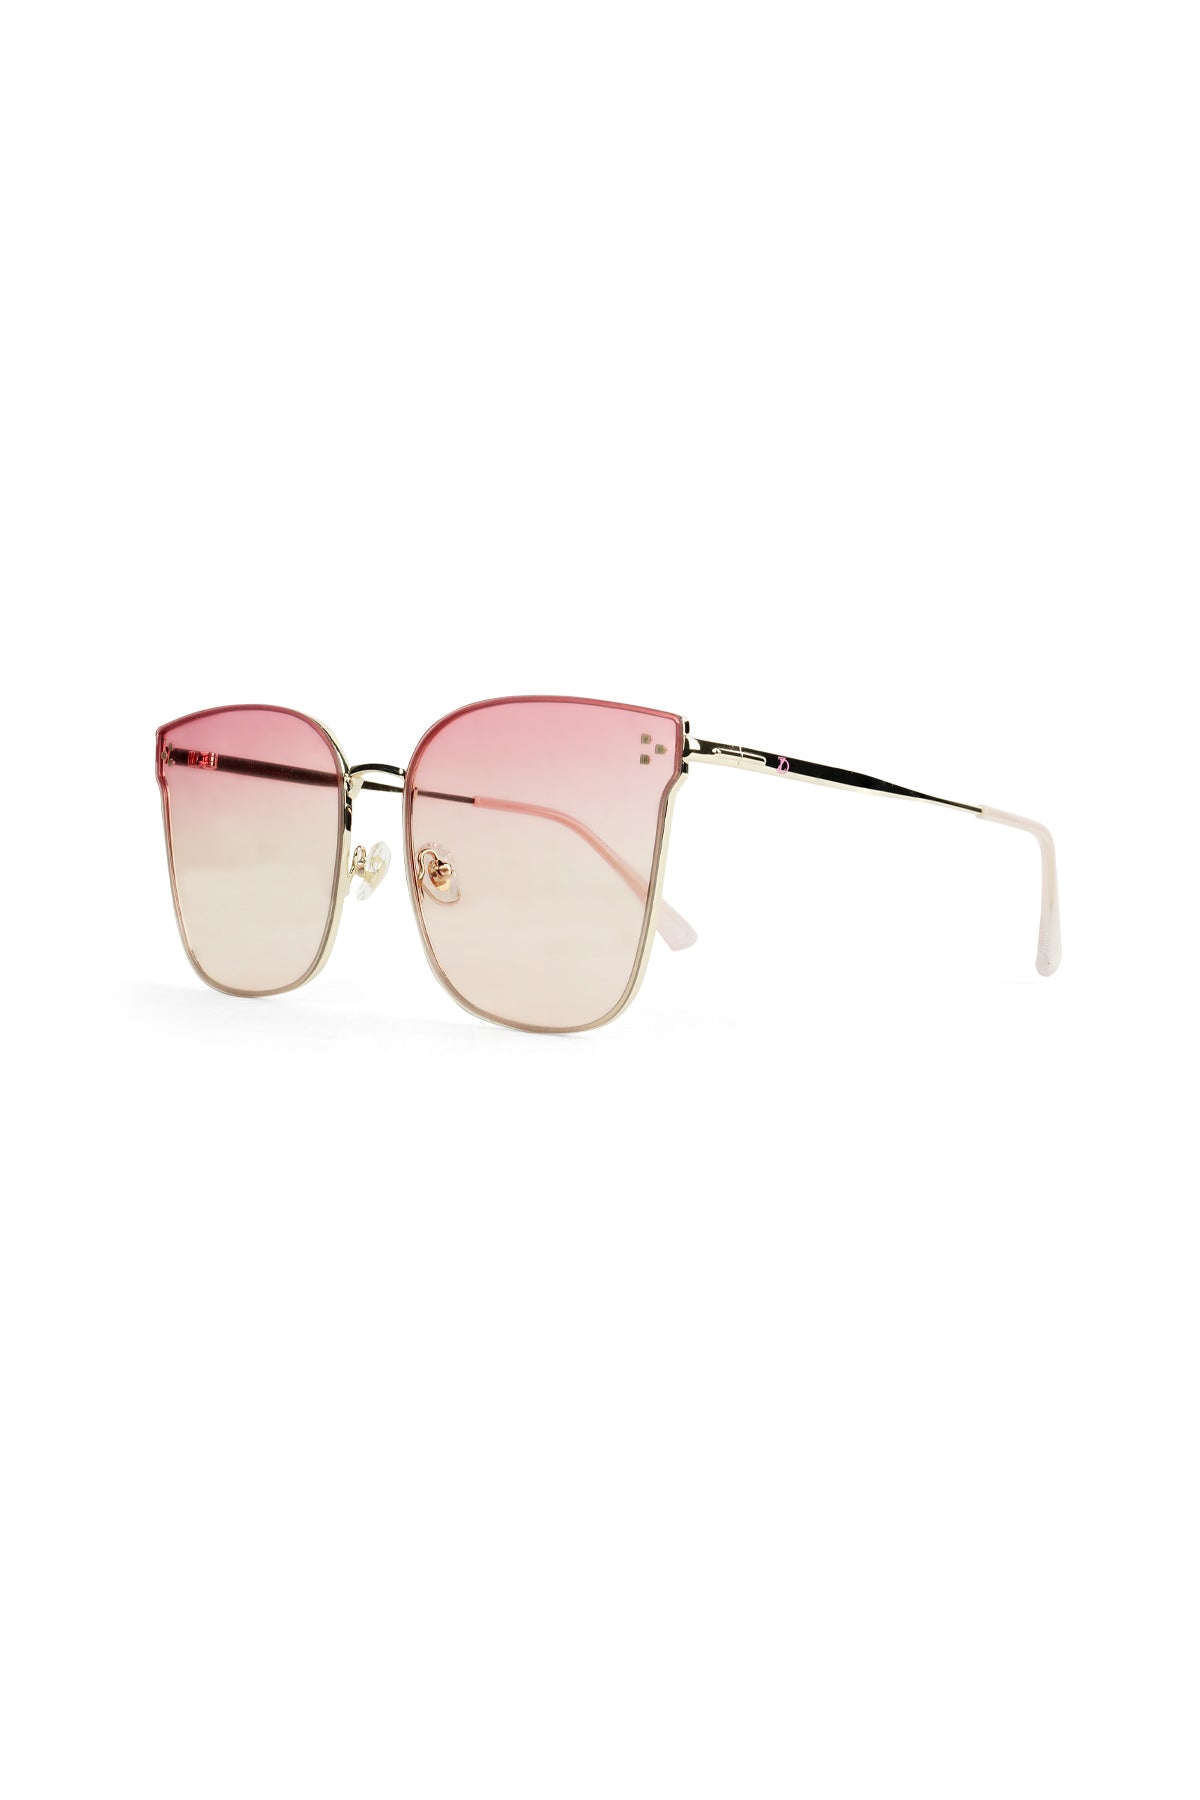 Maylin Sunglasses - Pink